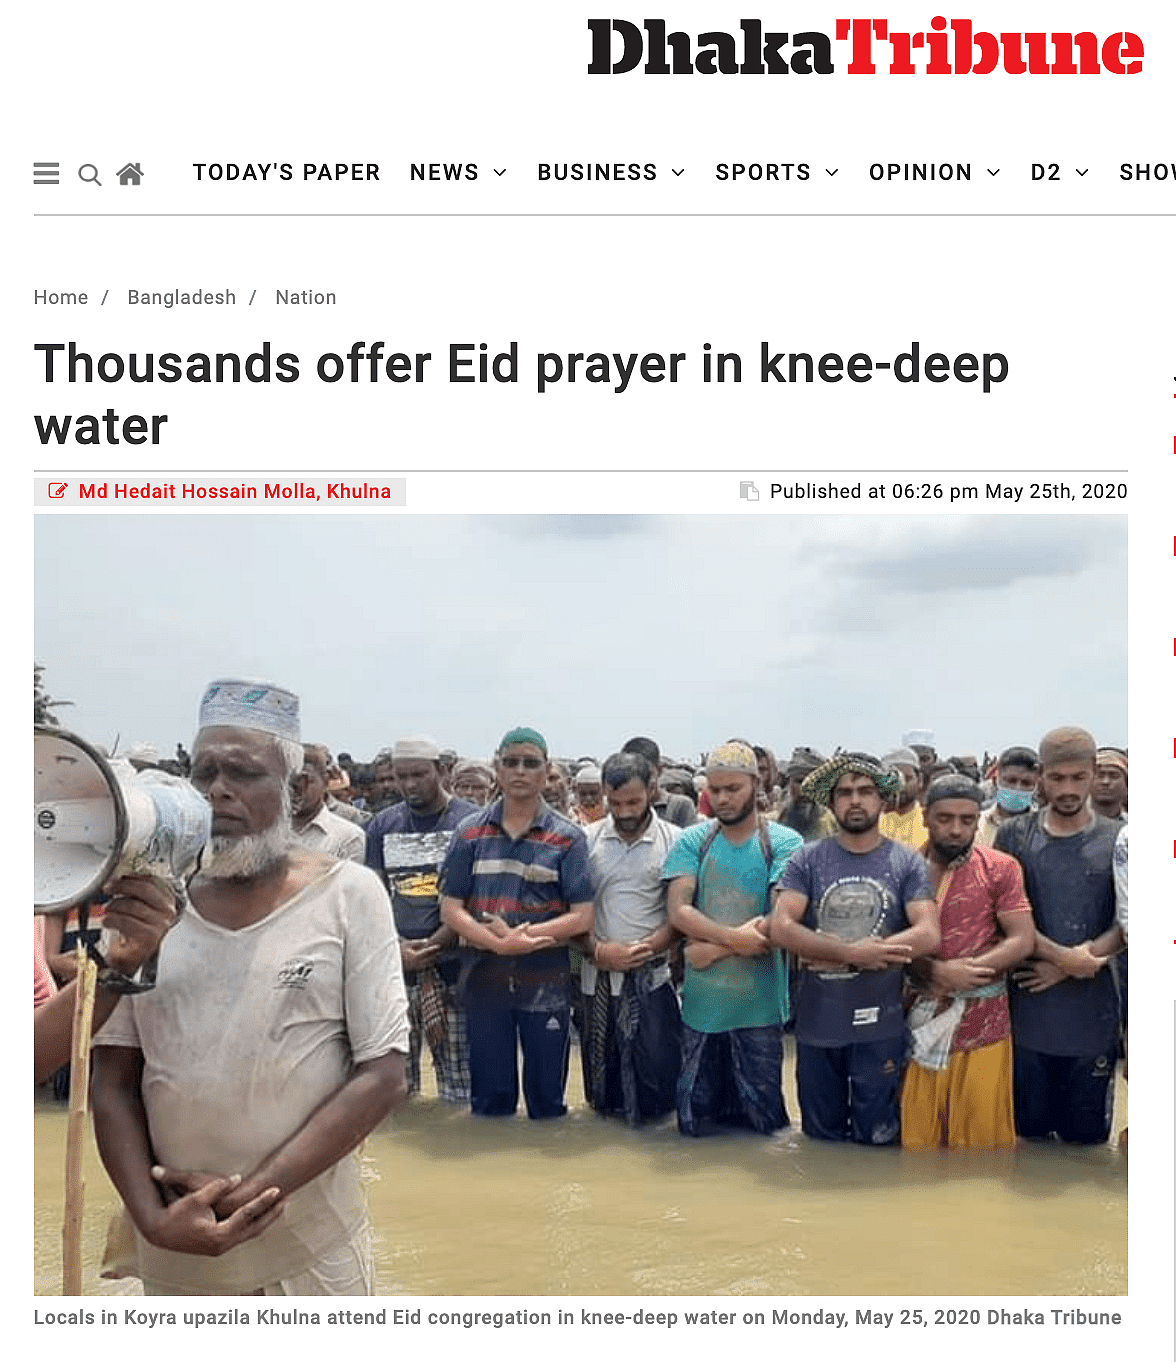 ये वीडियो बांग्लादेश का है, भारत का नहीं. लोगों को Amphan चक्रवात की वजह से पानी में खड़े होकर नमाज अदा करनी पड़ी थी